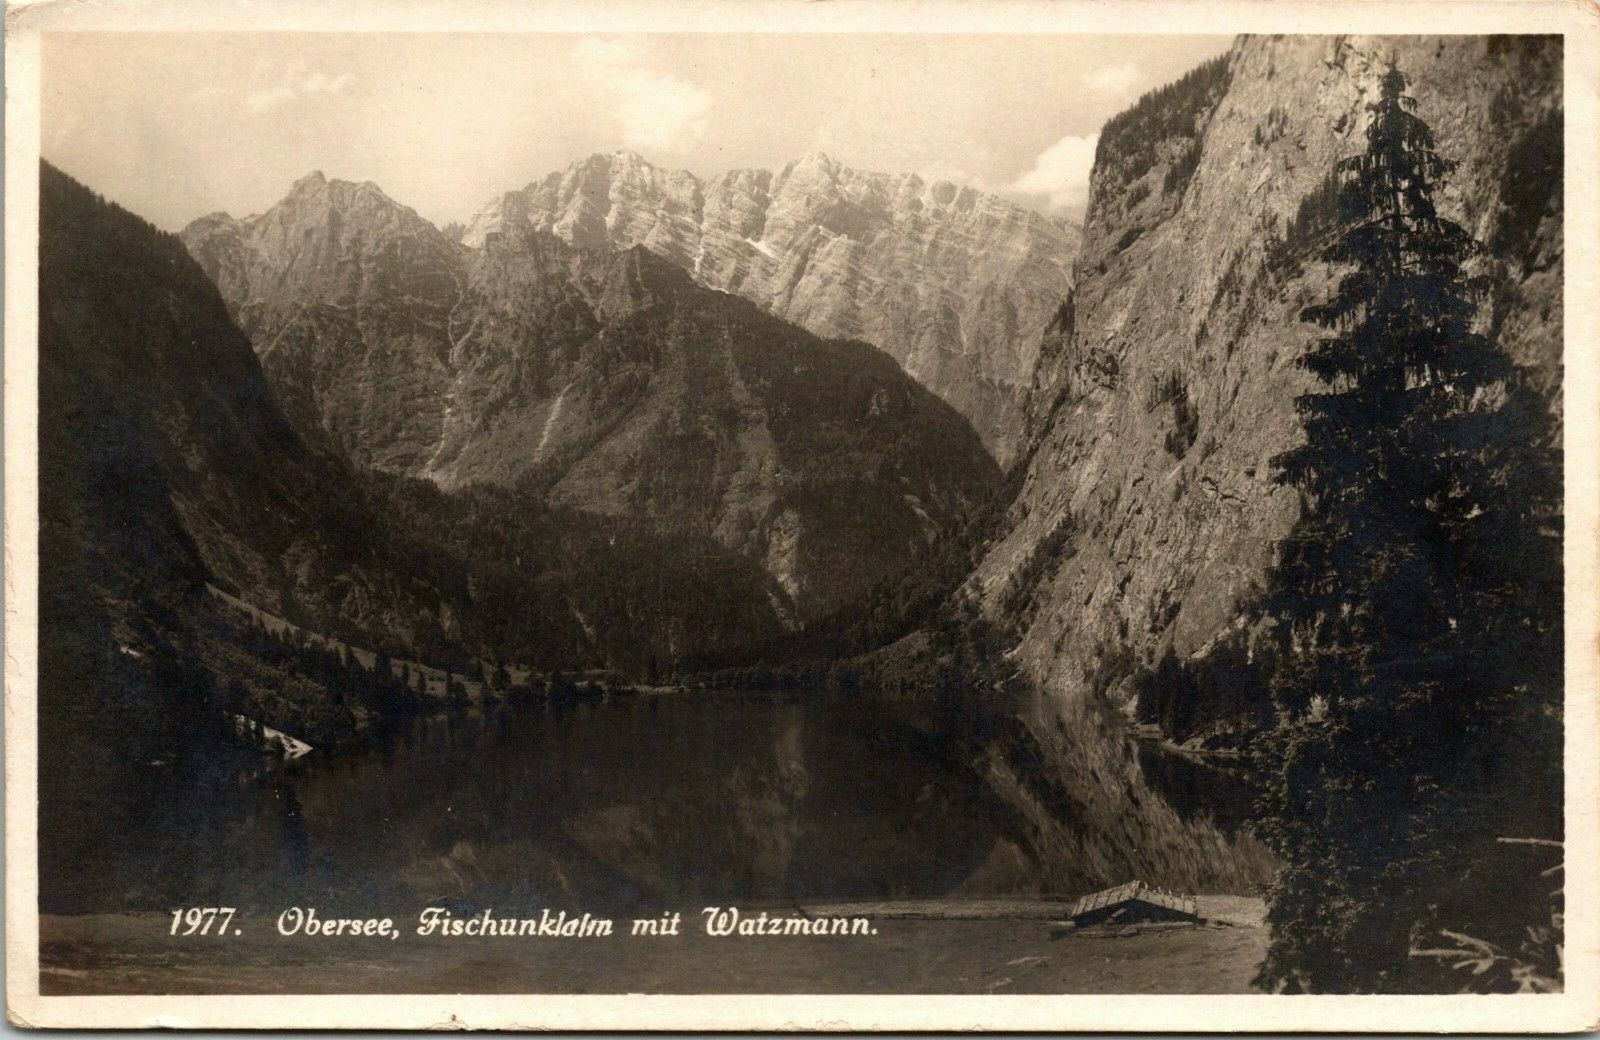 VTG RPPC 1977 Obersee, Fischunklalm Mit Watzmann Valley Alps Mountains Postcard